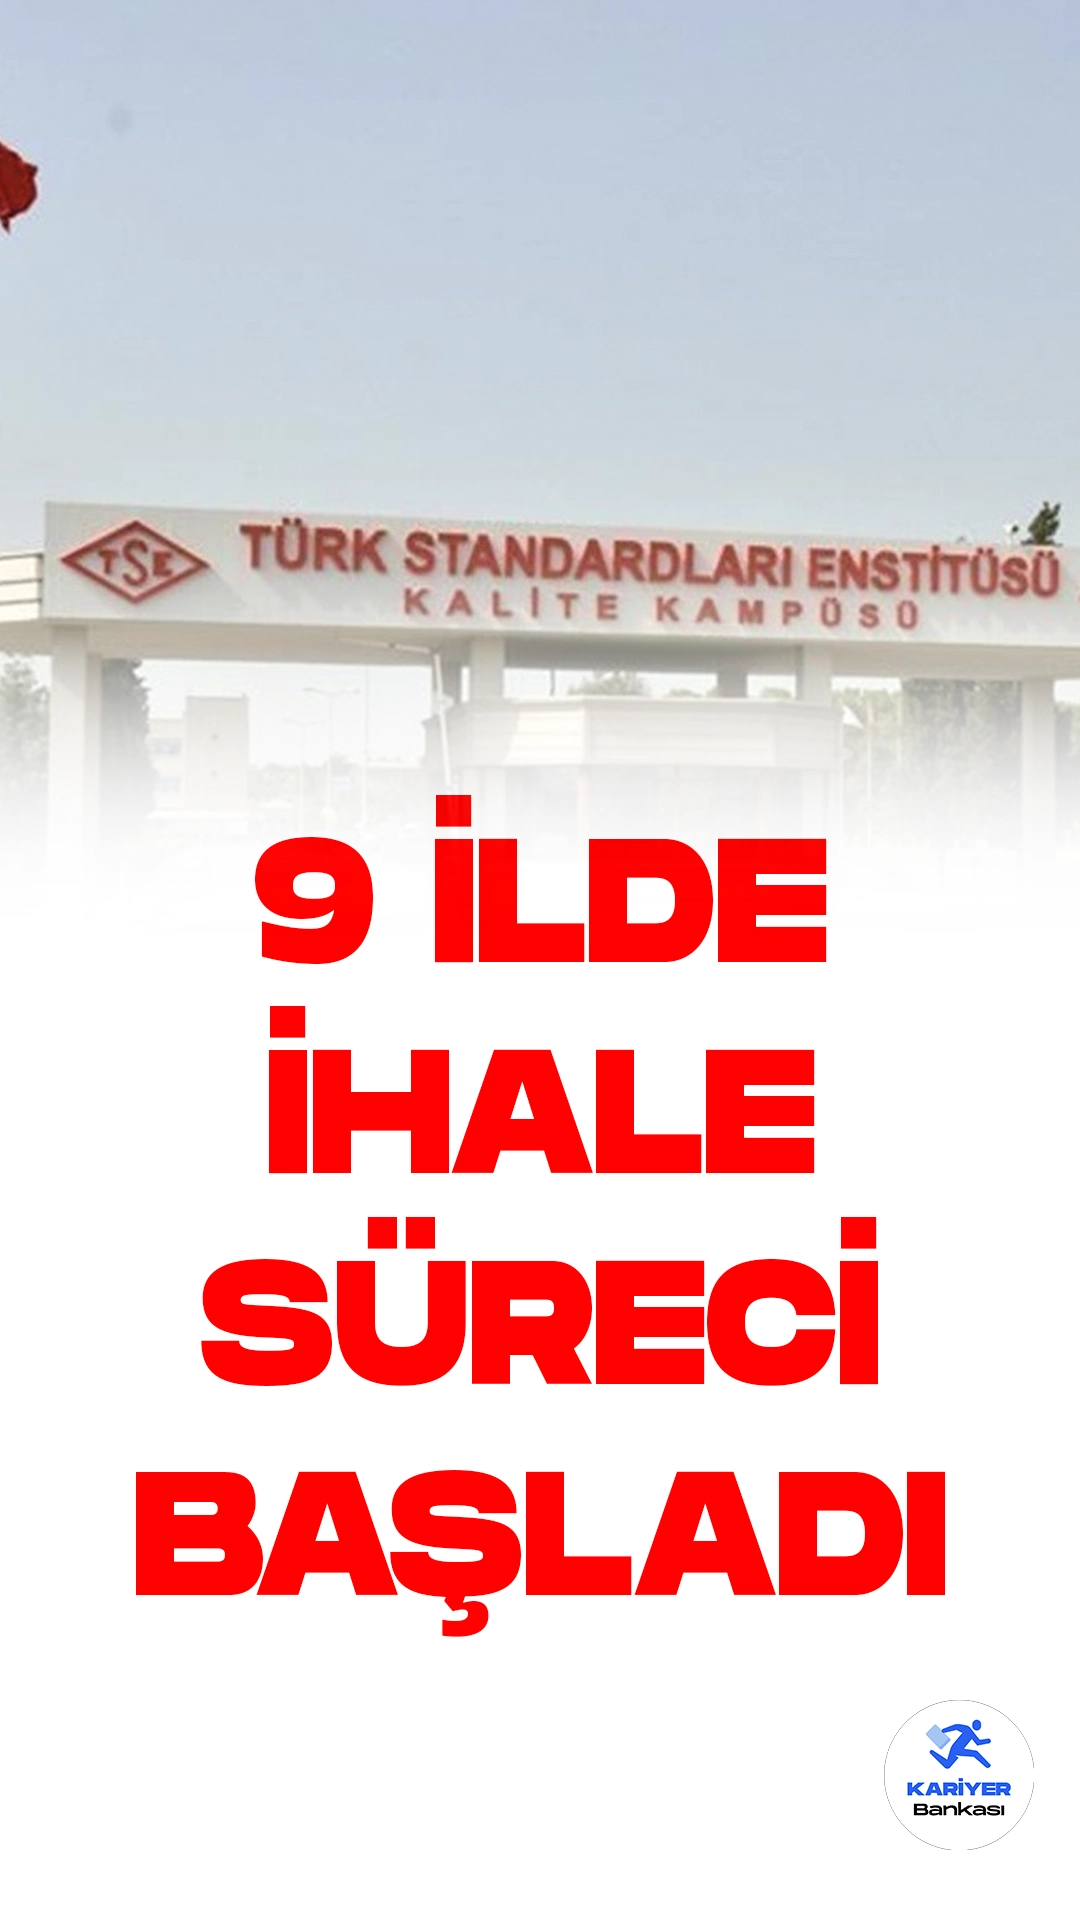 Türk Standardları Enstitüsü (TSE), Araç Kontrol Merkezleri (AKM) İçin Yeni İhale Sürecini Başlattı.Türk Standardları Enstitüsü (TSE), araç kontrol merkezleri (AKM) oluşturmak amacıyla 9 ilde yeni bir ihale sürecini başlattı. Bu önemli girişim için son başvuru tarihi olarak 15 Haziran belirlendi.